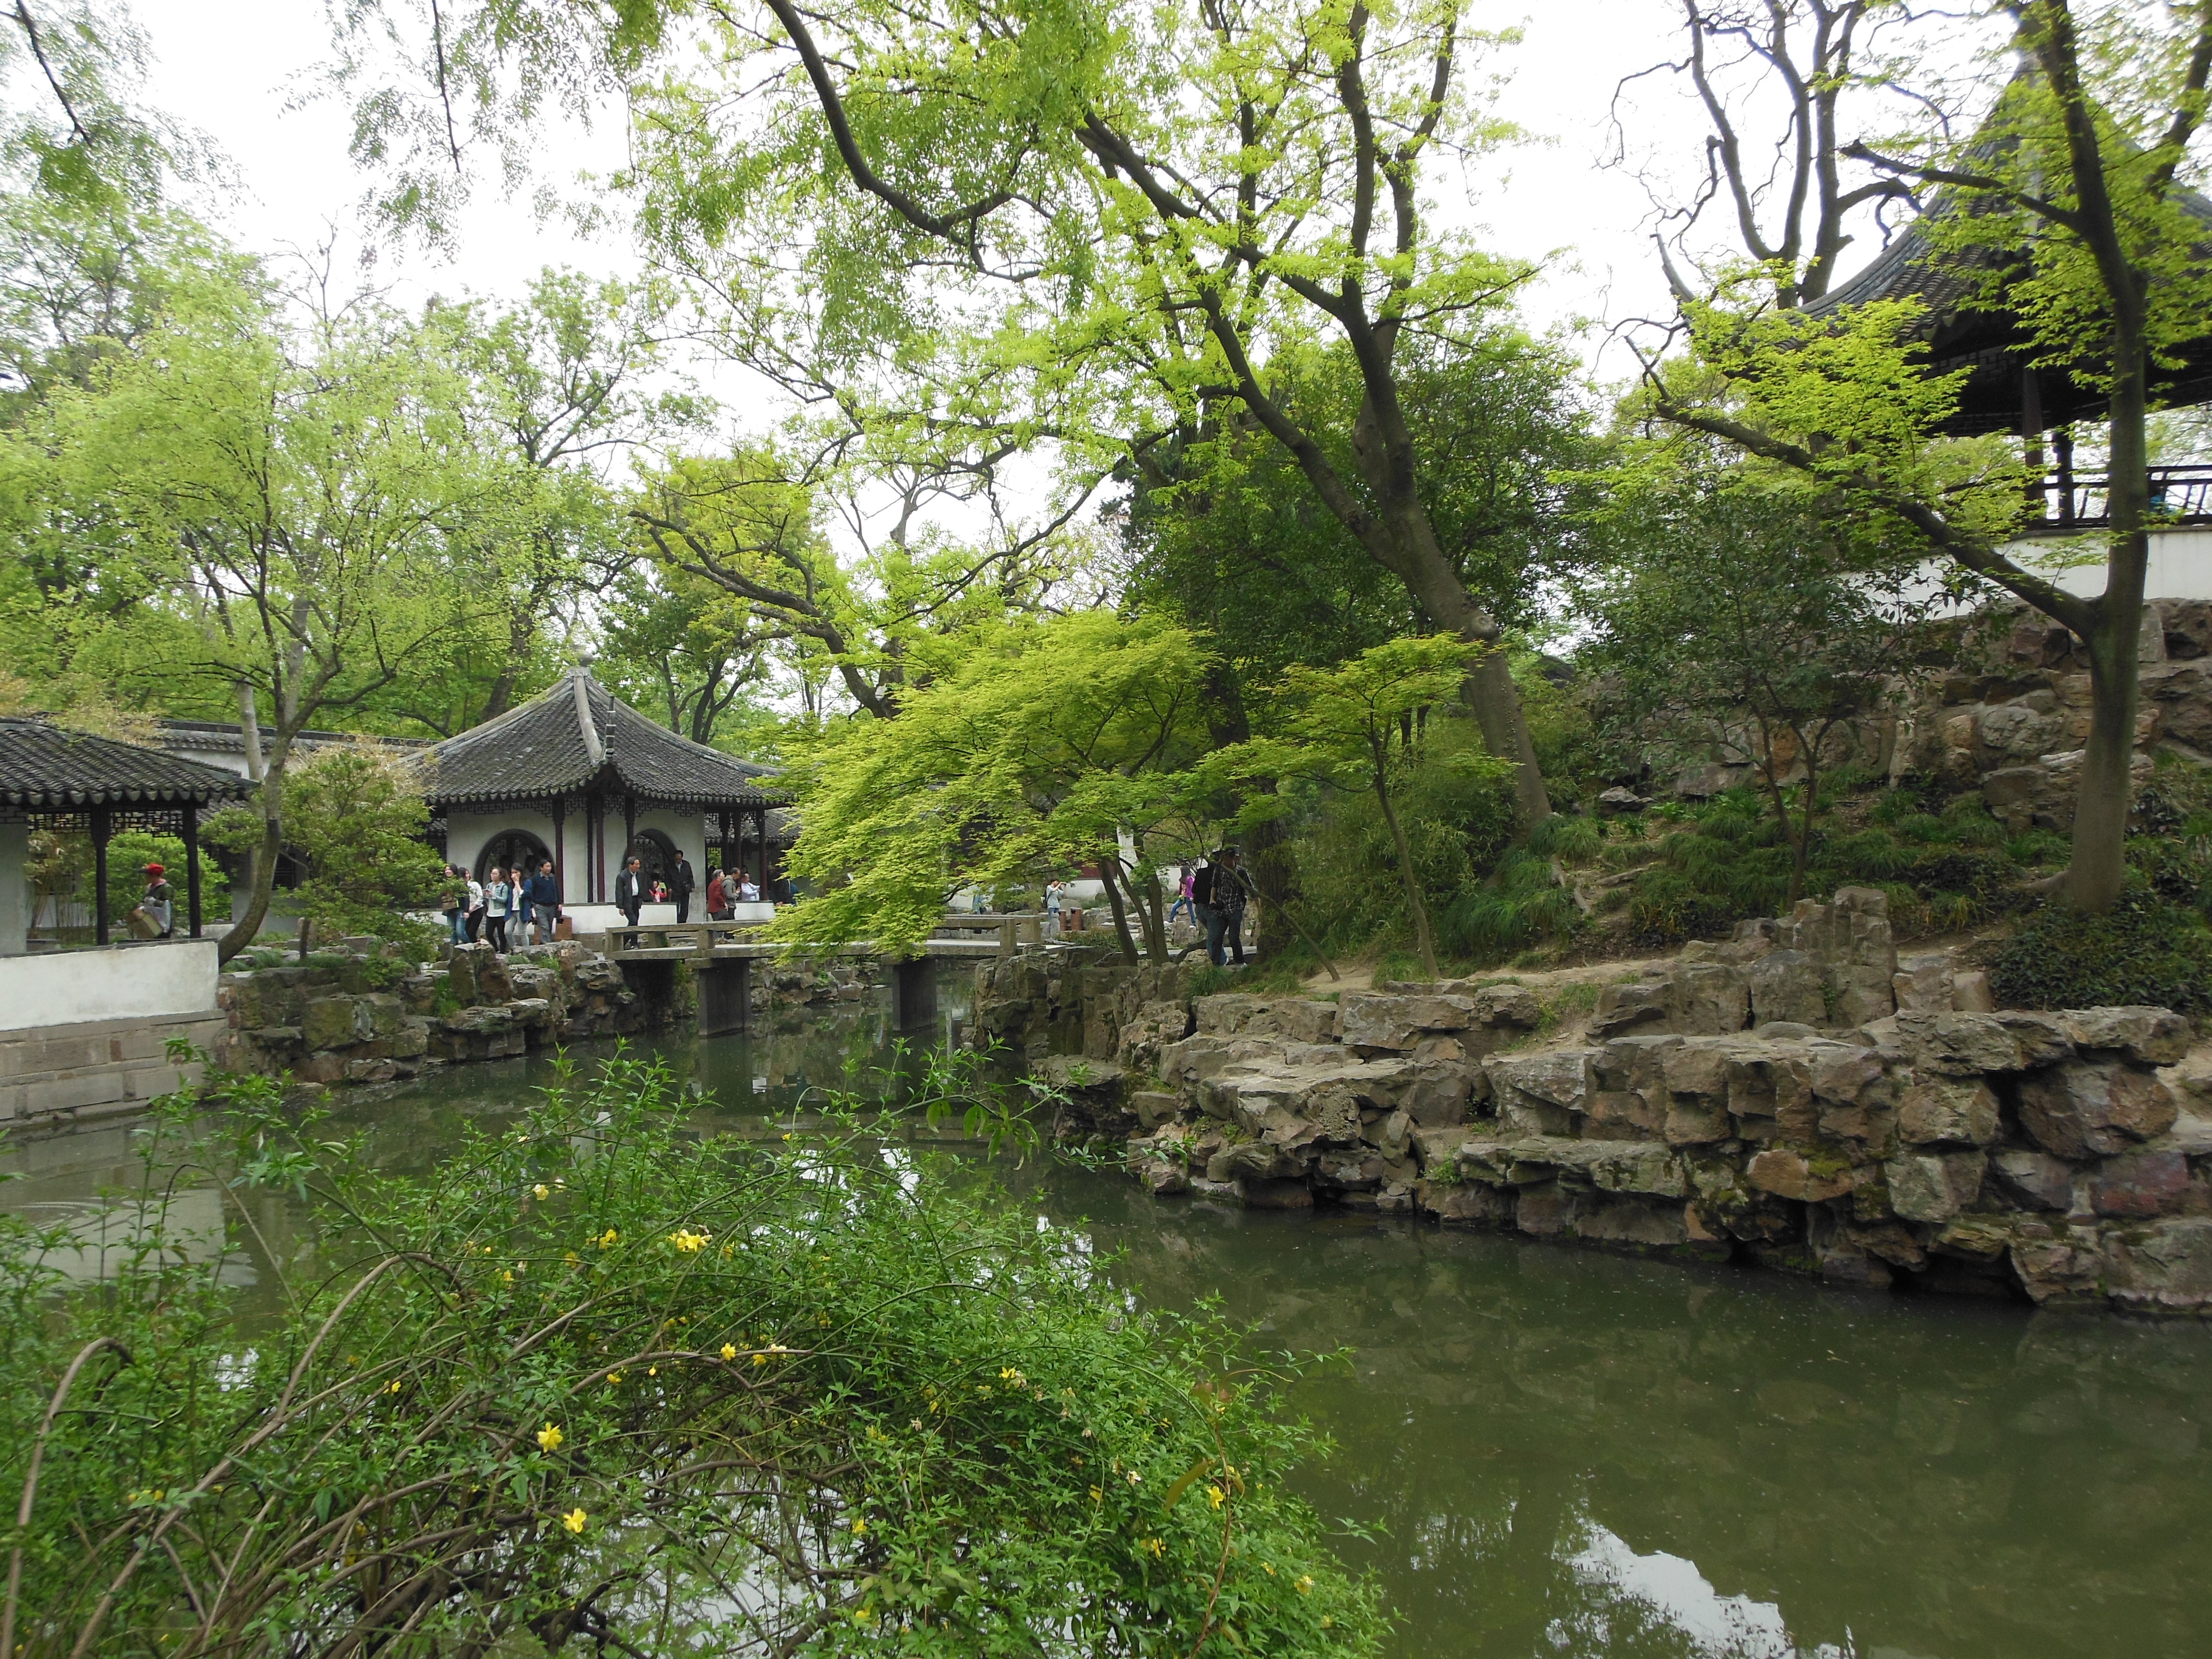 拙政园内的一个临水建筑,前面的池塘中种有很大面积的荷花,荷又名芙蓉